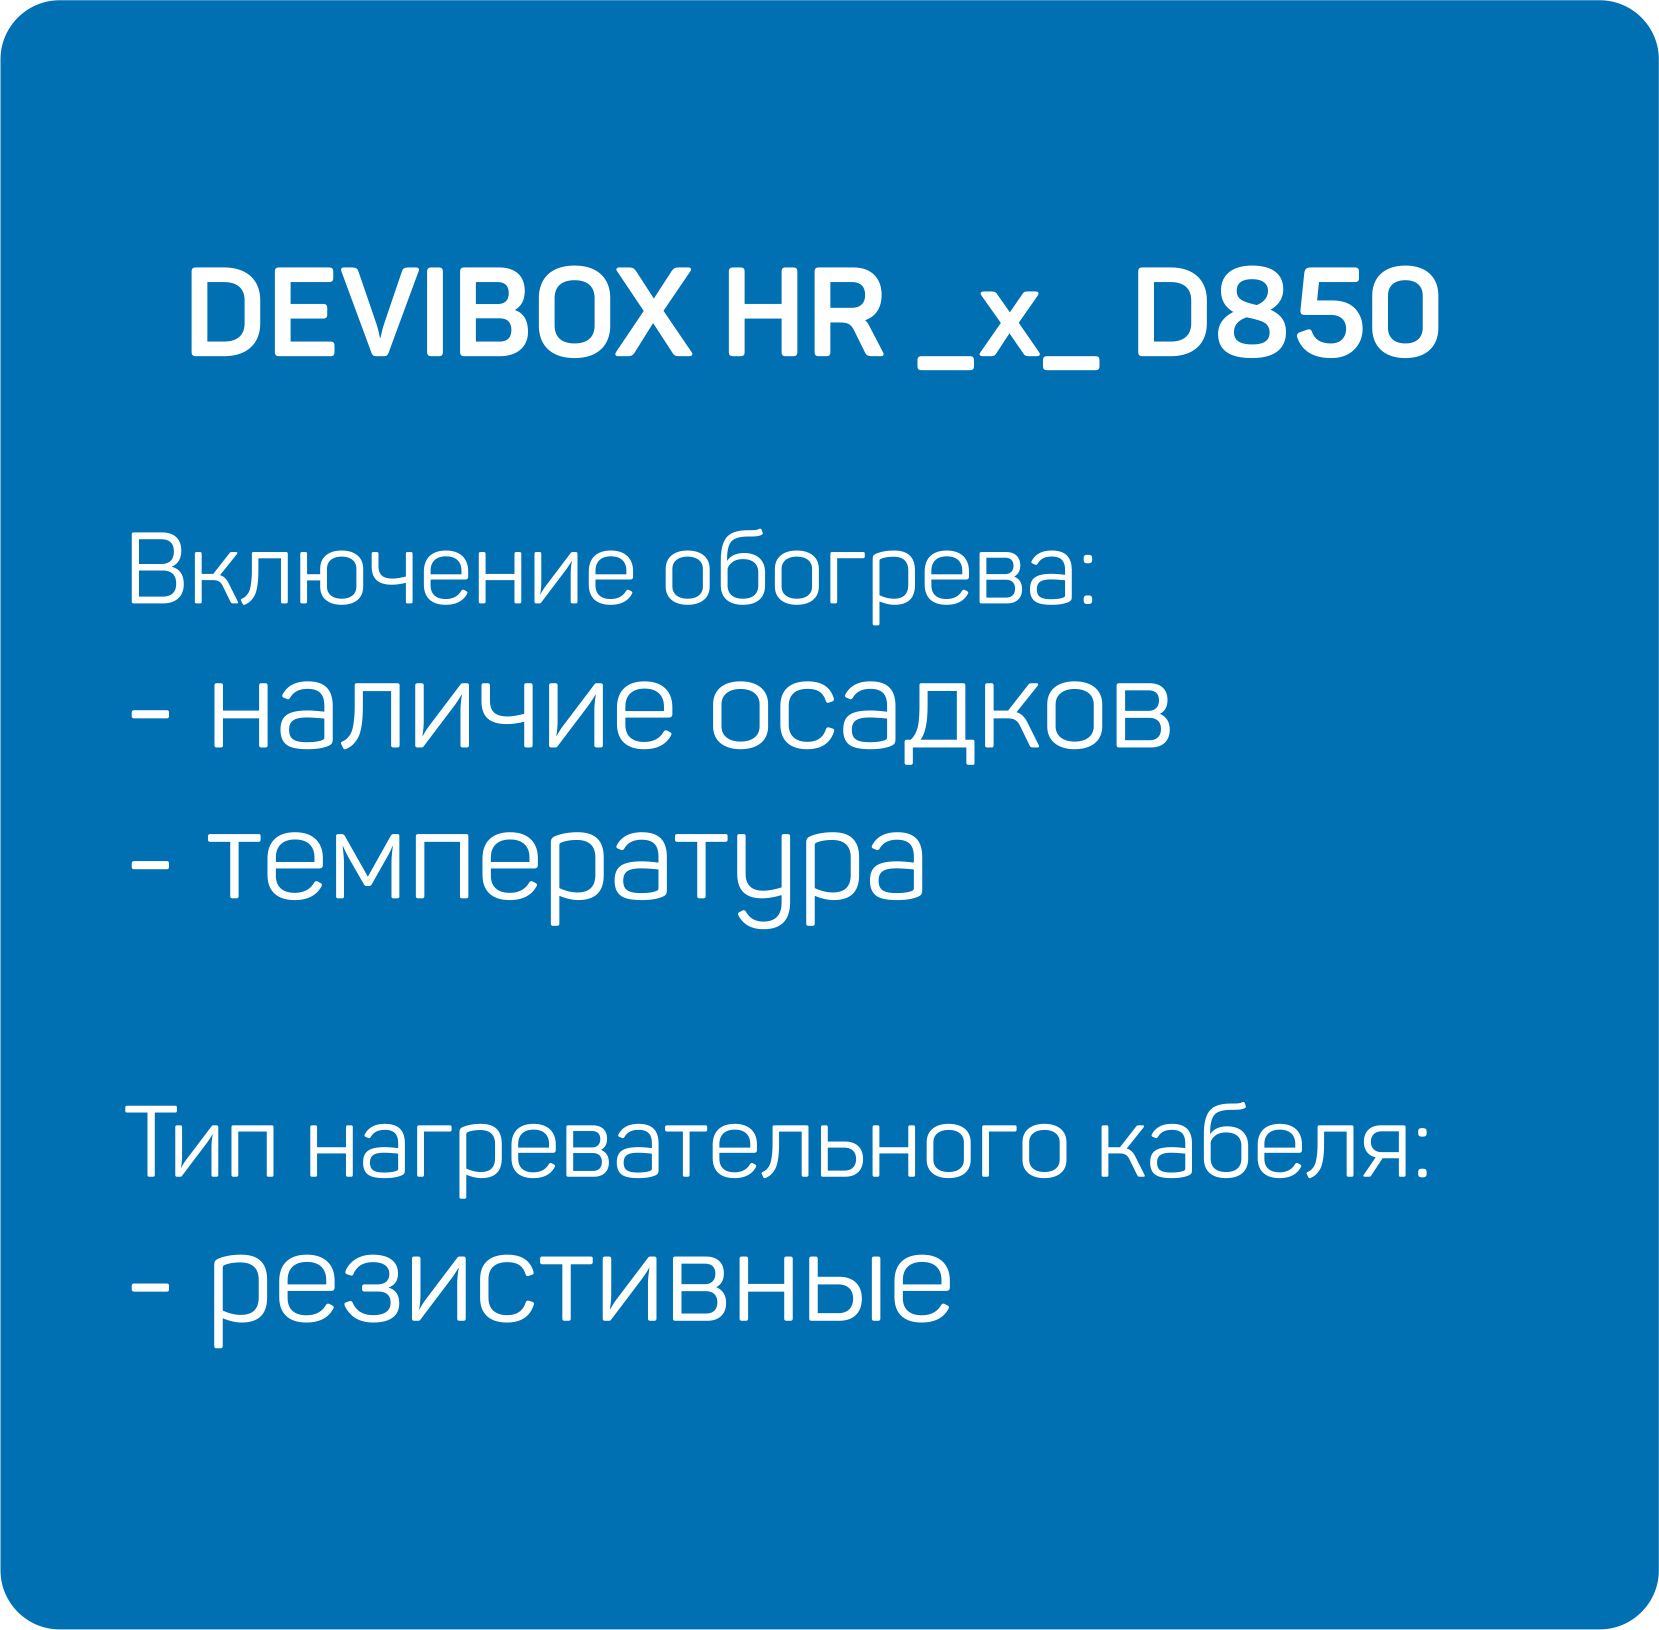 HR _x_ D850